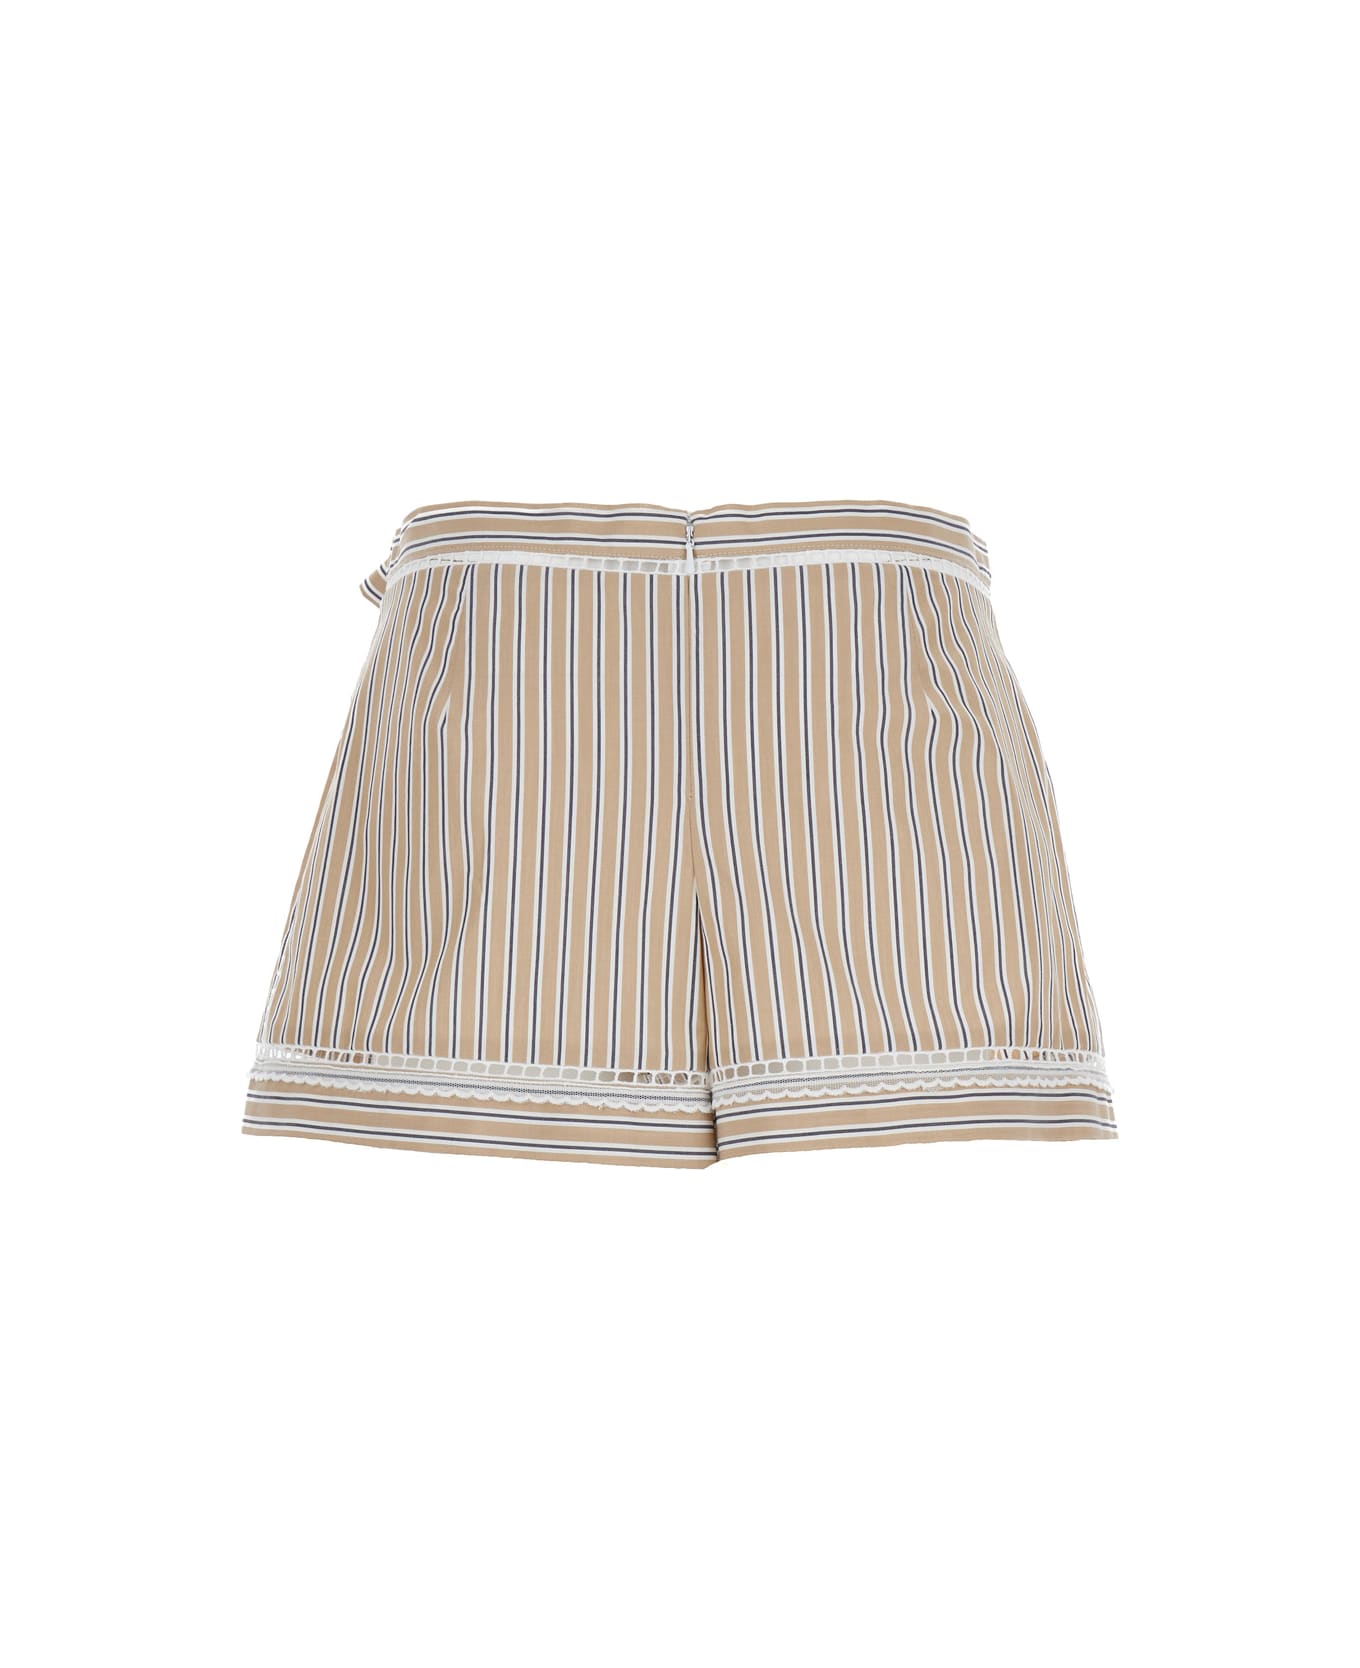 Alberta Ferretti Beige Striped Shorts In Cotton Woman - Beige ショートパンツ